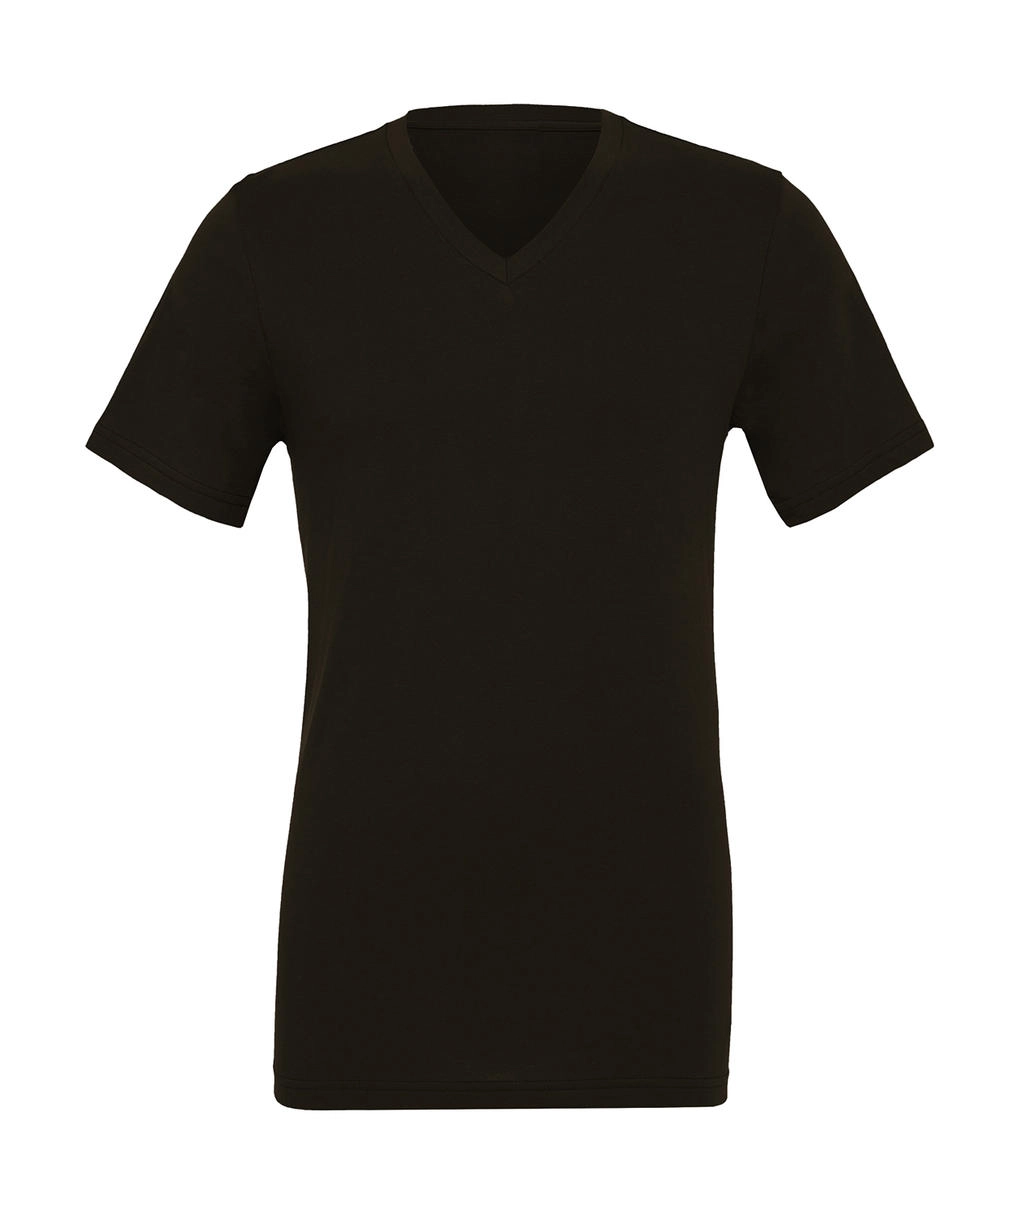 Unisex Jersey V-Neck T-Shirt zum Besticken und Bedrucken in der Farbe Brown mit Ihren Logo, Schriftzug oder Motiv.